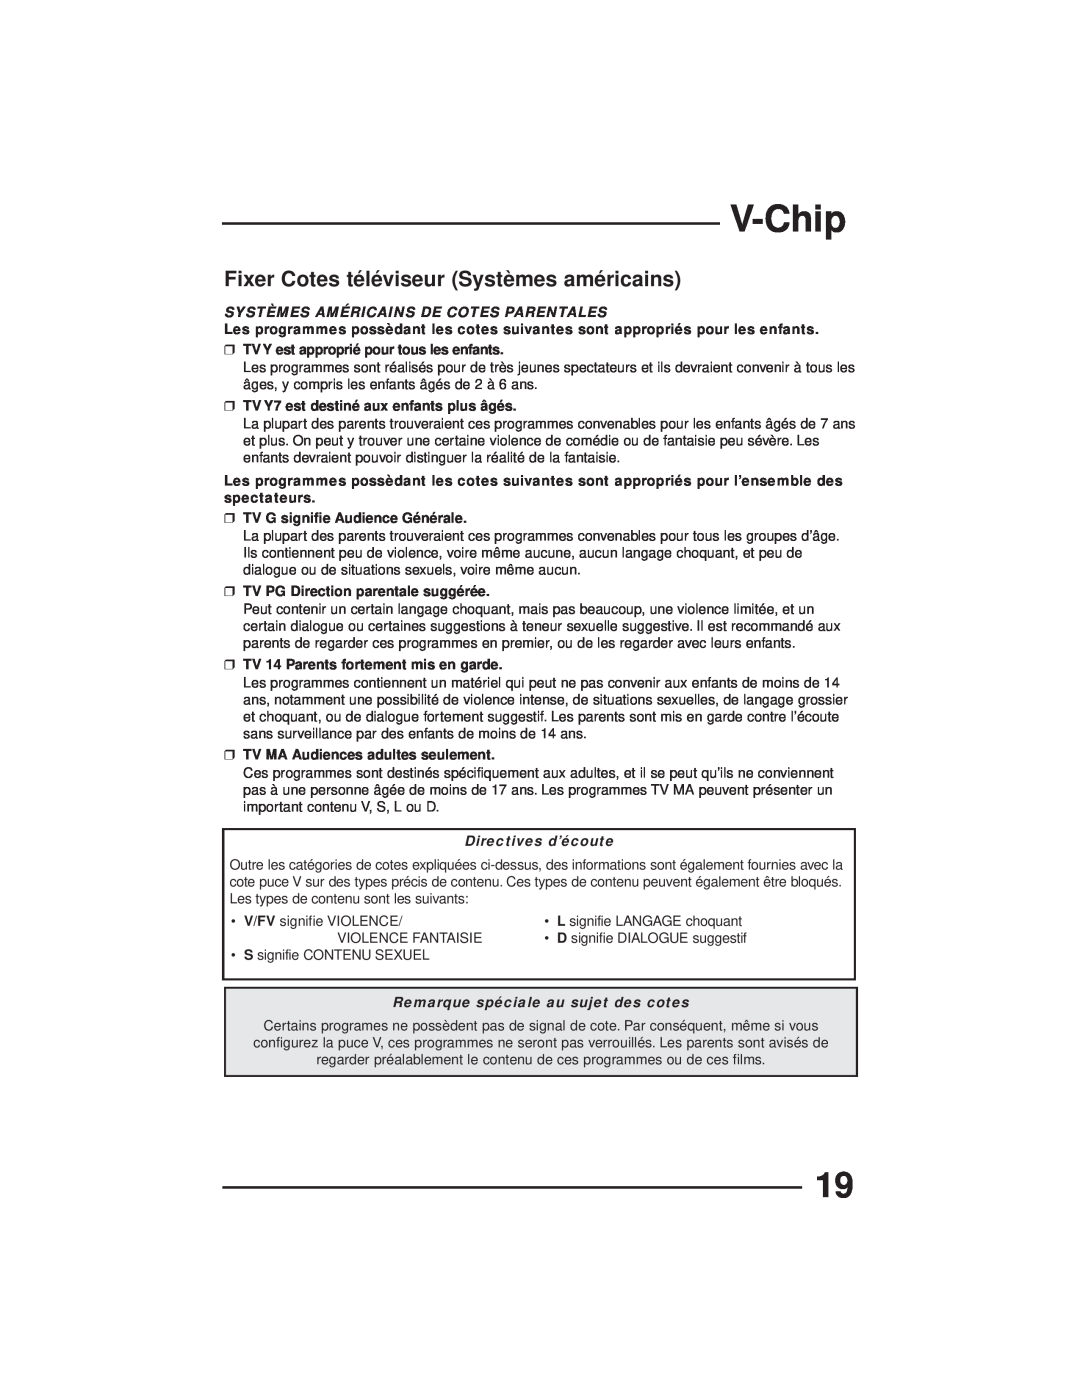 JVC AV-27GFH manual Fixer Cotes téléviseur Systèmes américains, V-Chip, Systèmes Américains De Cotes Parentales 